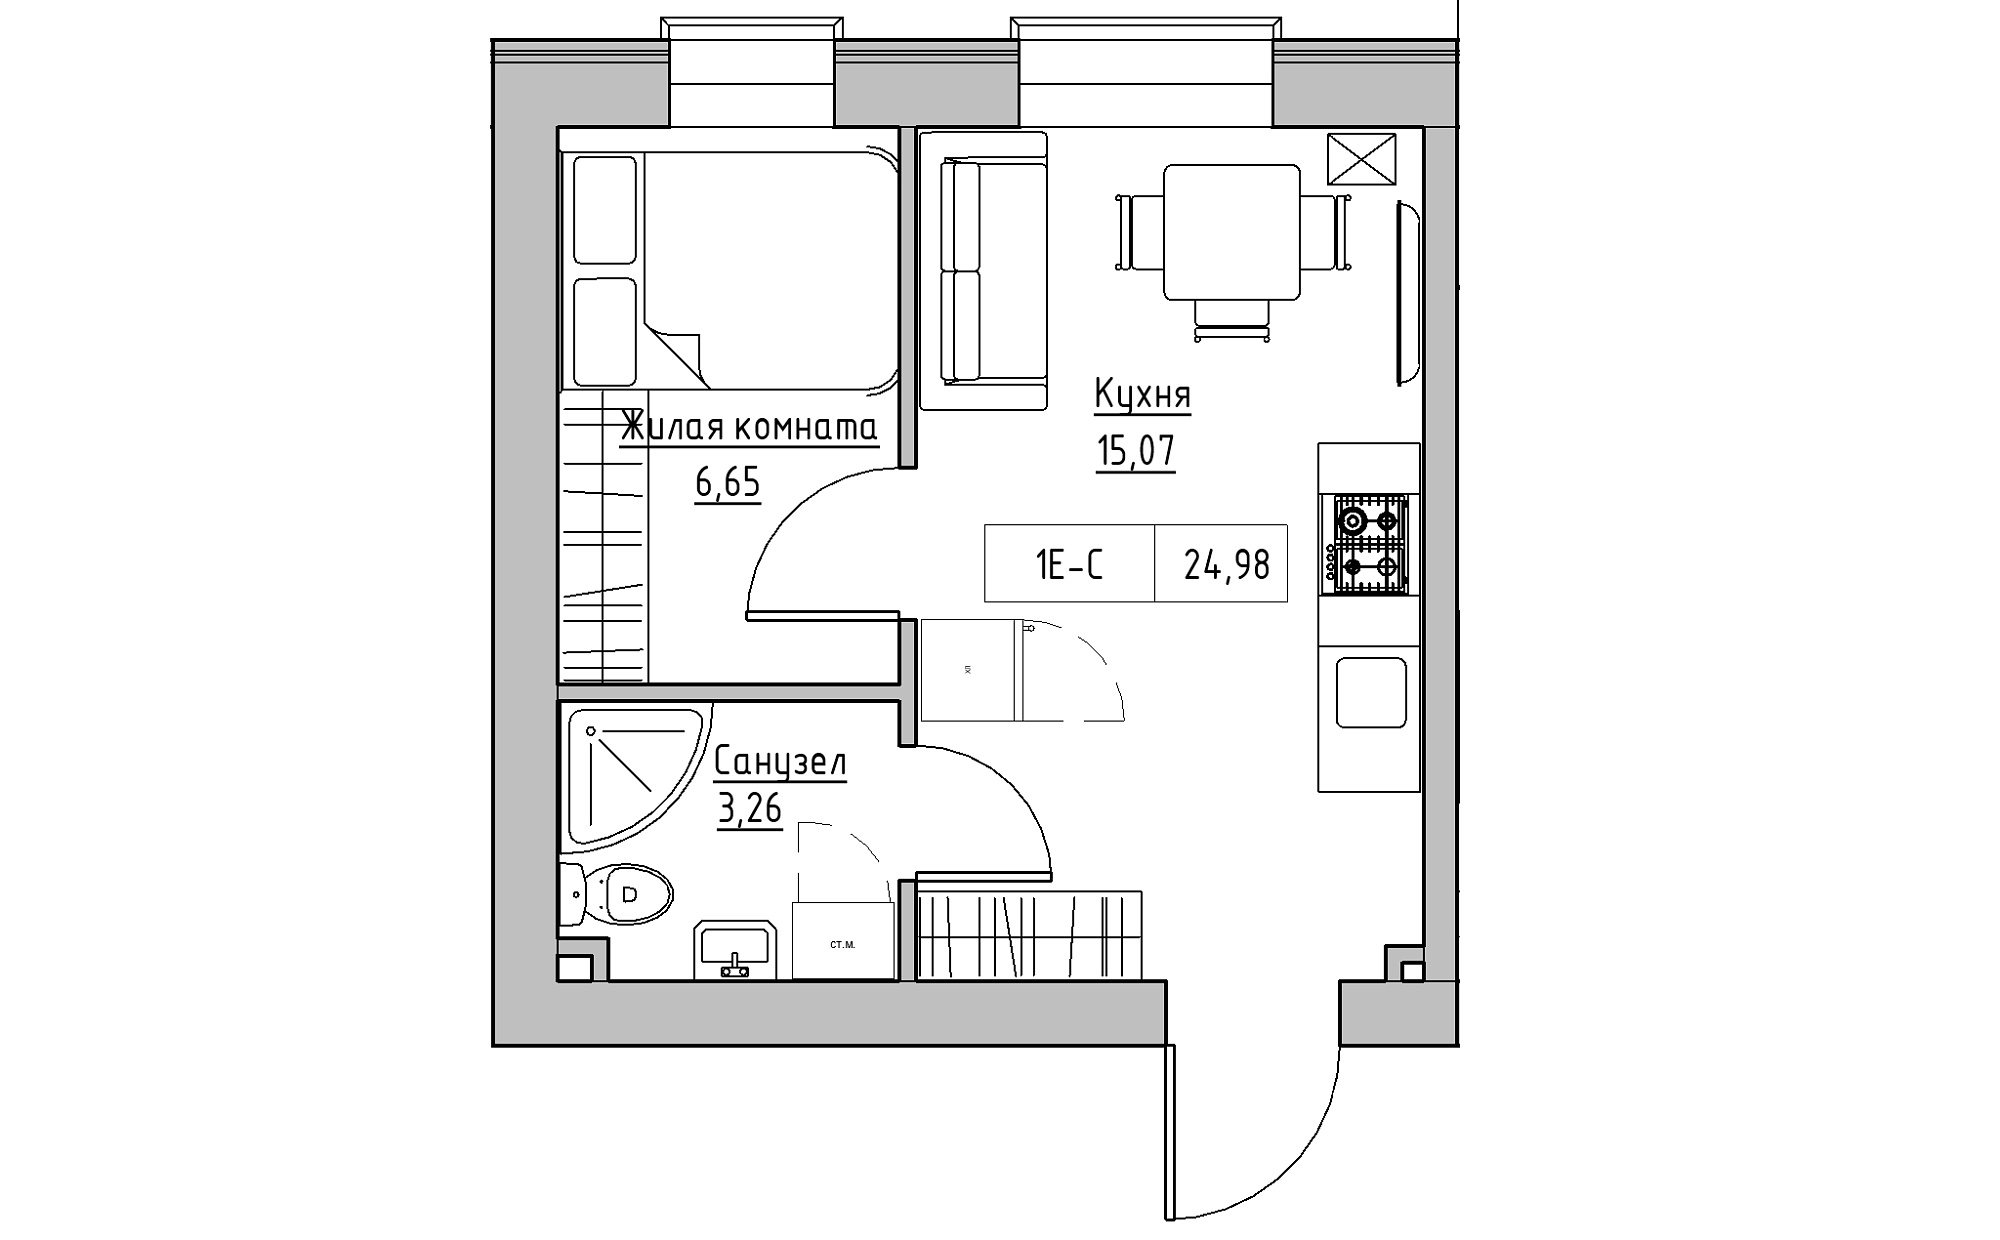 Планировка 1-к квартира площей 24.98м2, KS-022-03/0004.